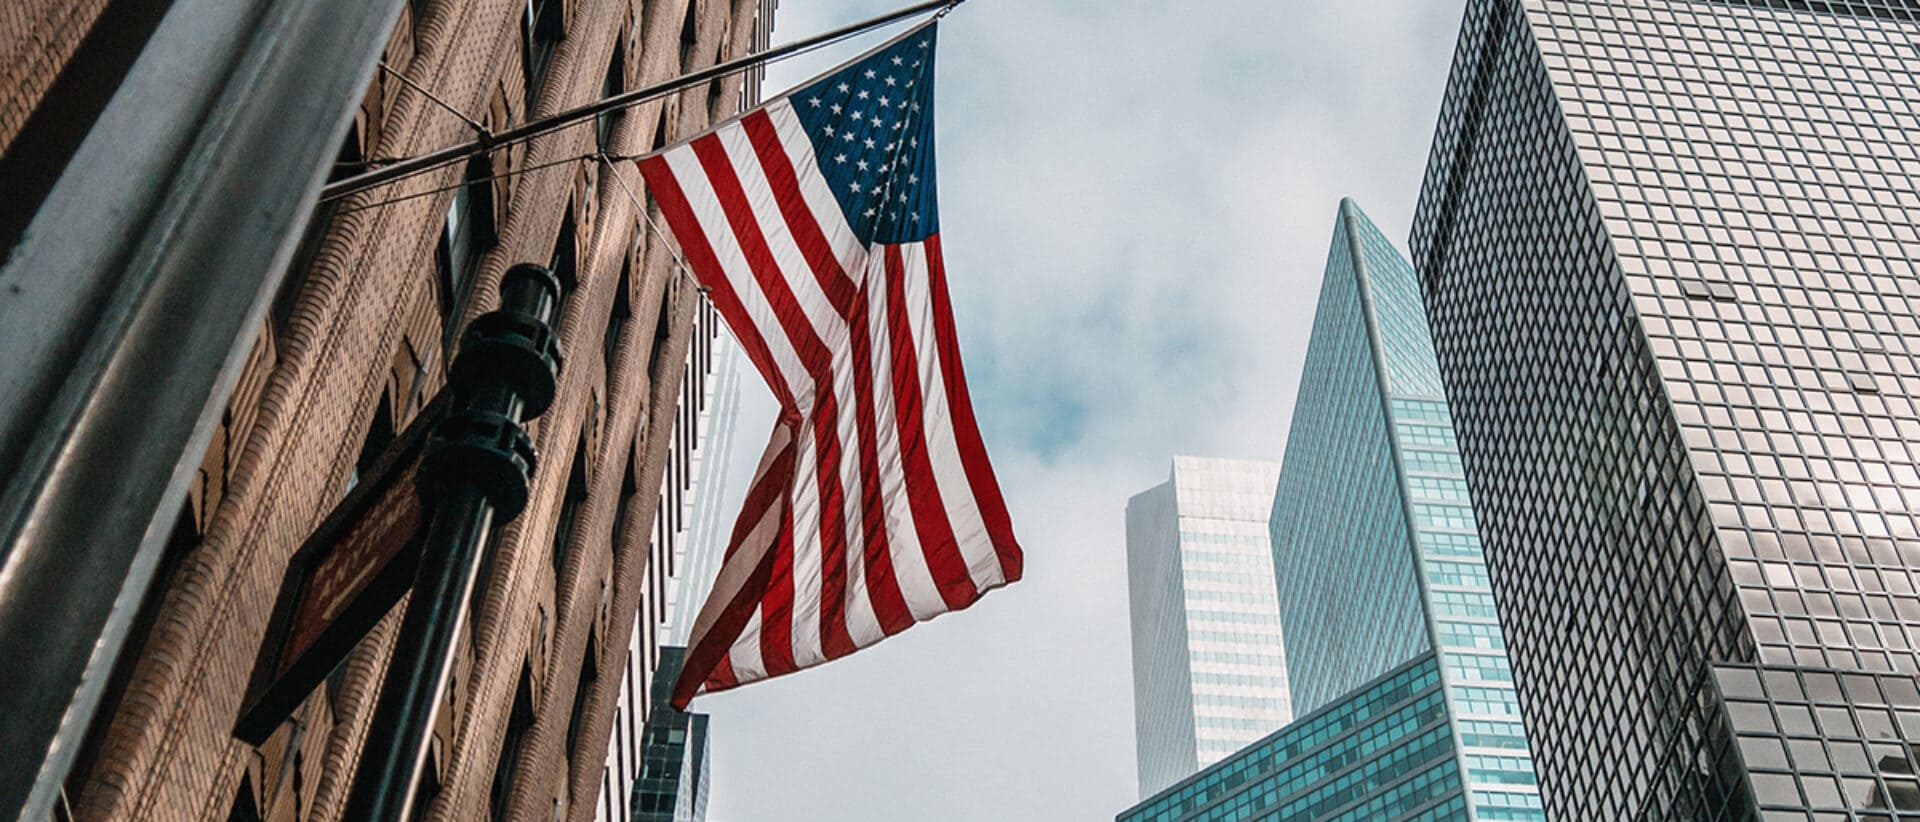 Bandiera americana che sventola con grattacieli sullo sfondo